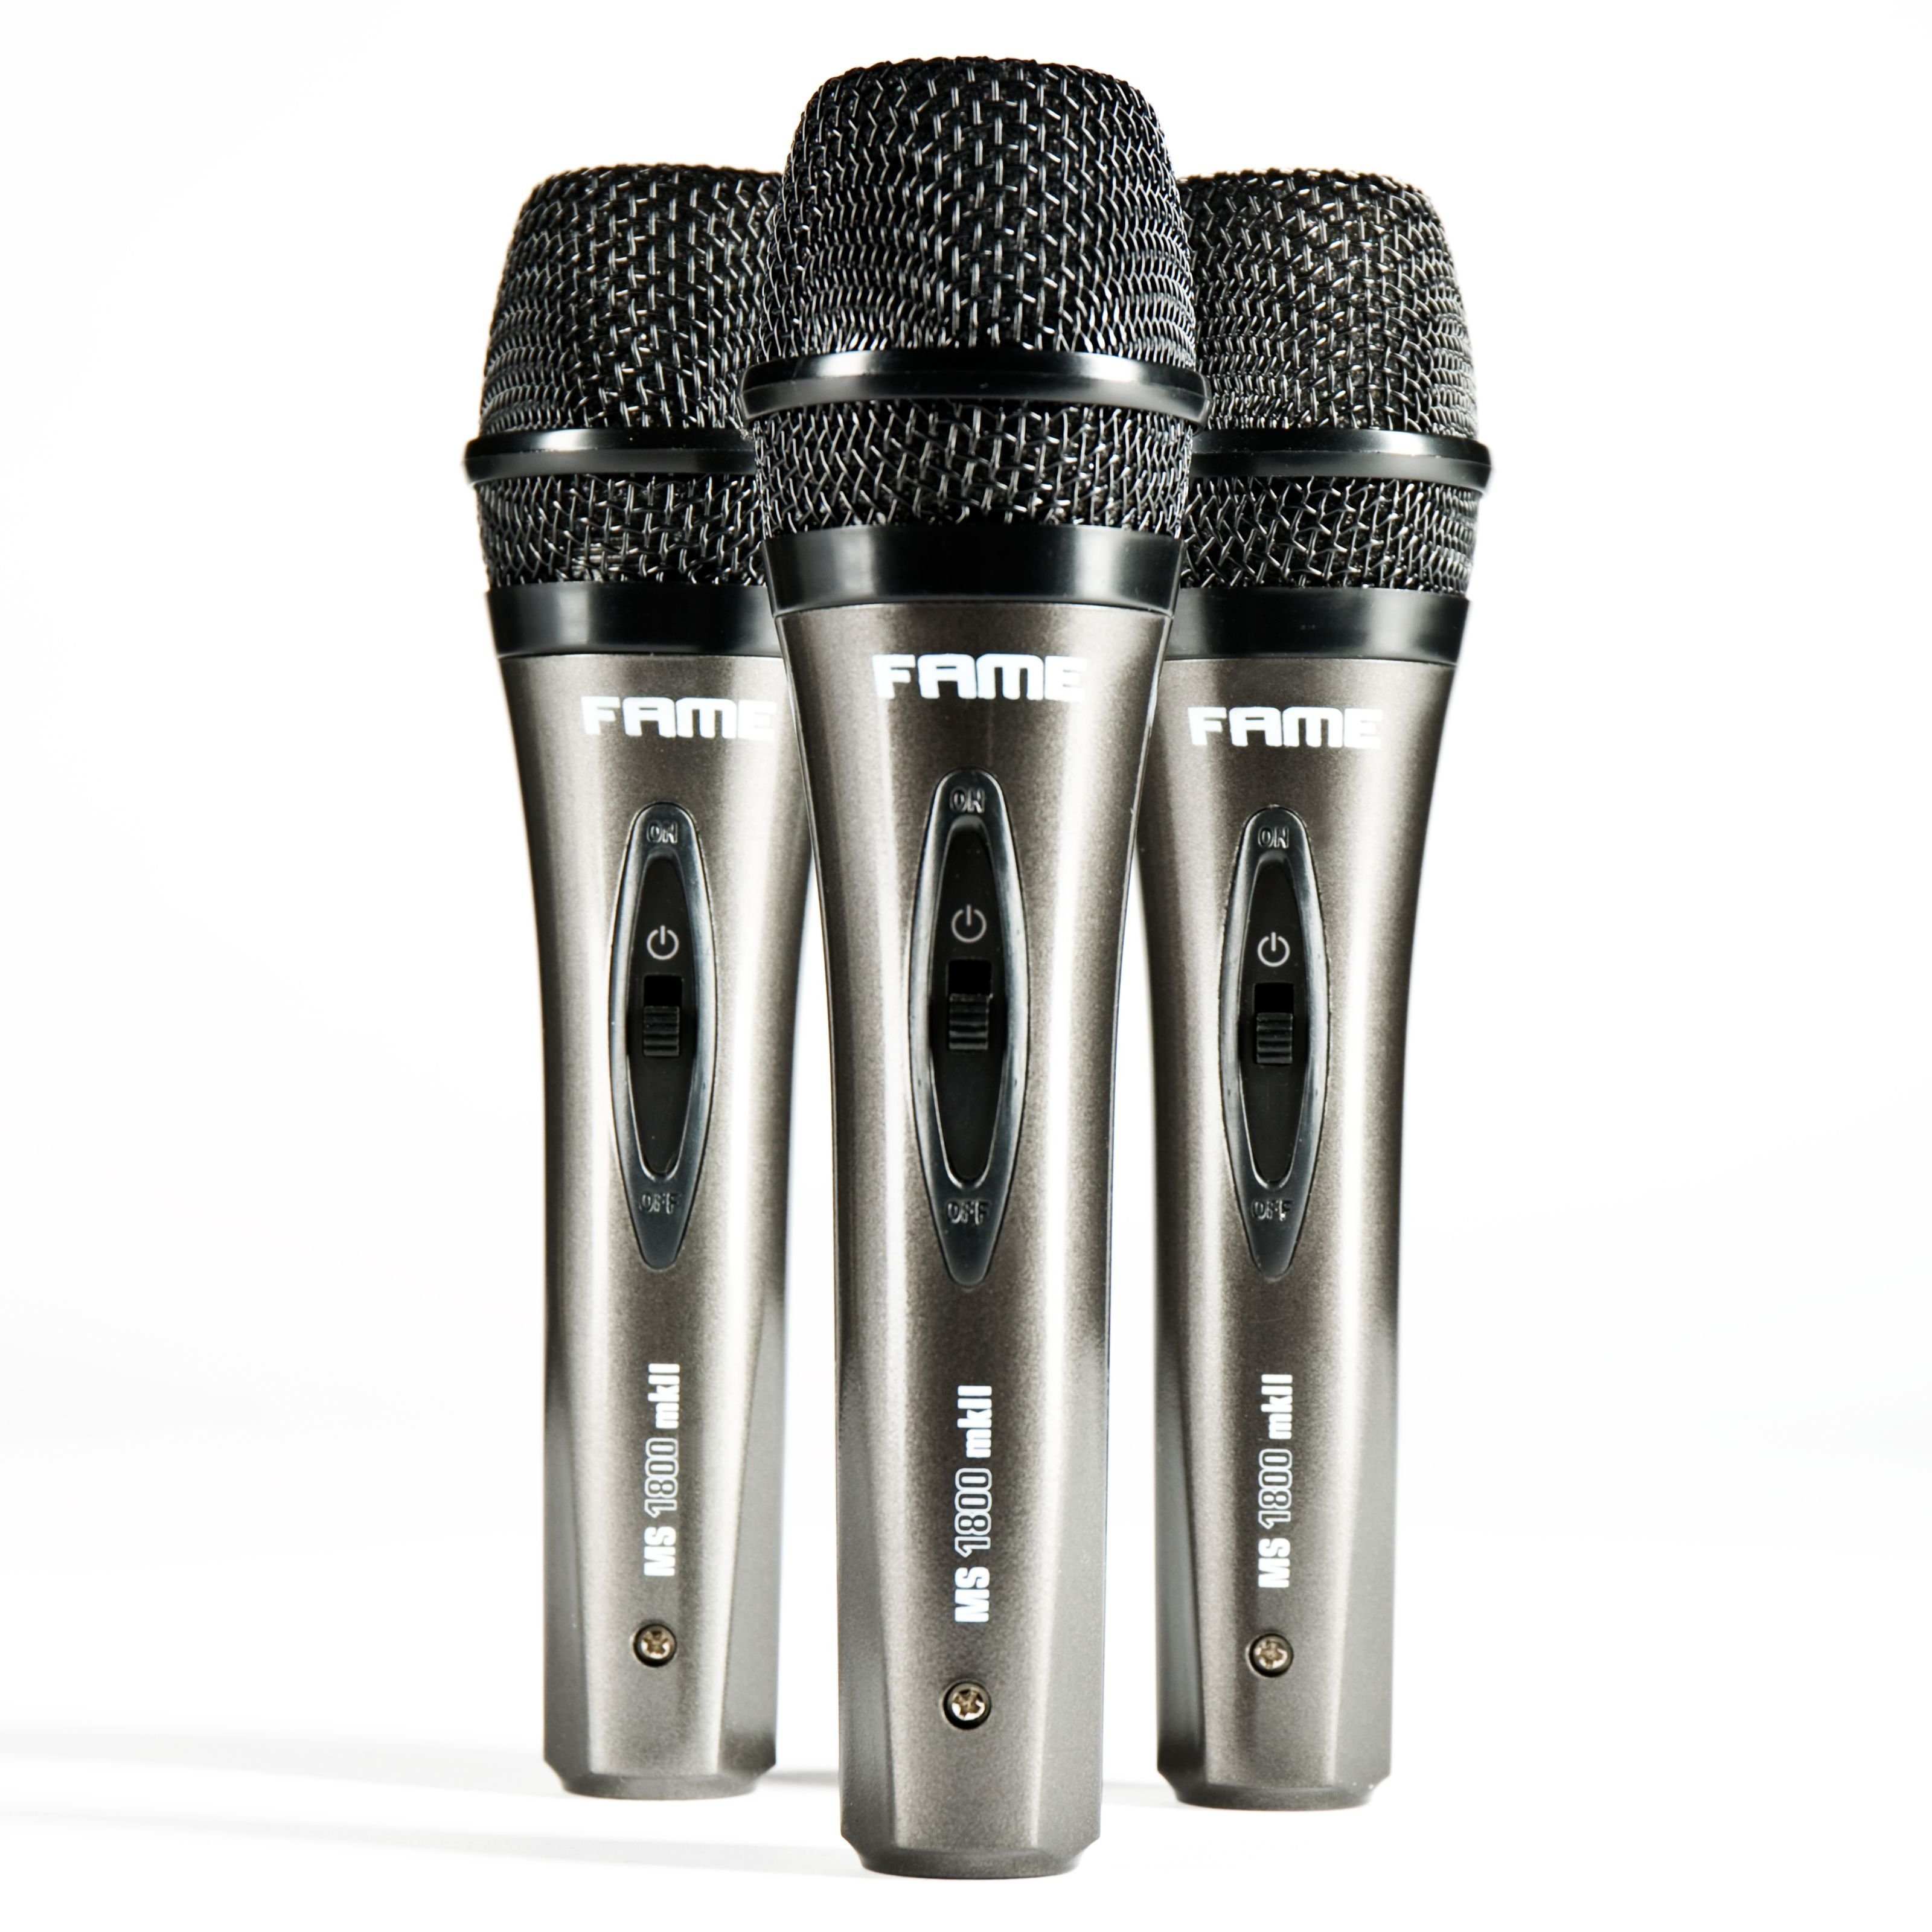 Fame Audio Mikrofon (MS 1800 MKII Dynamisches Gesangsmikrofon Bundle mit Klemmen Case), MS 1800 MKII, Dynamisches Gesangsmikrofon, Bundle